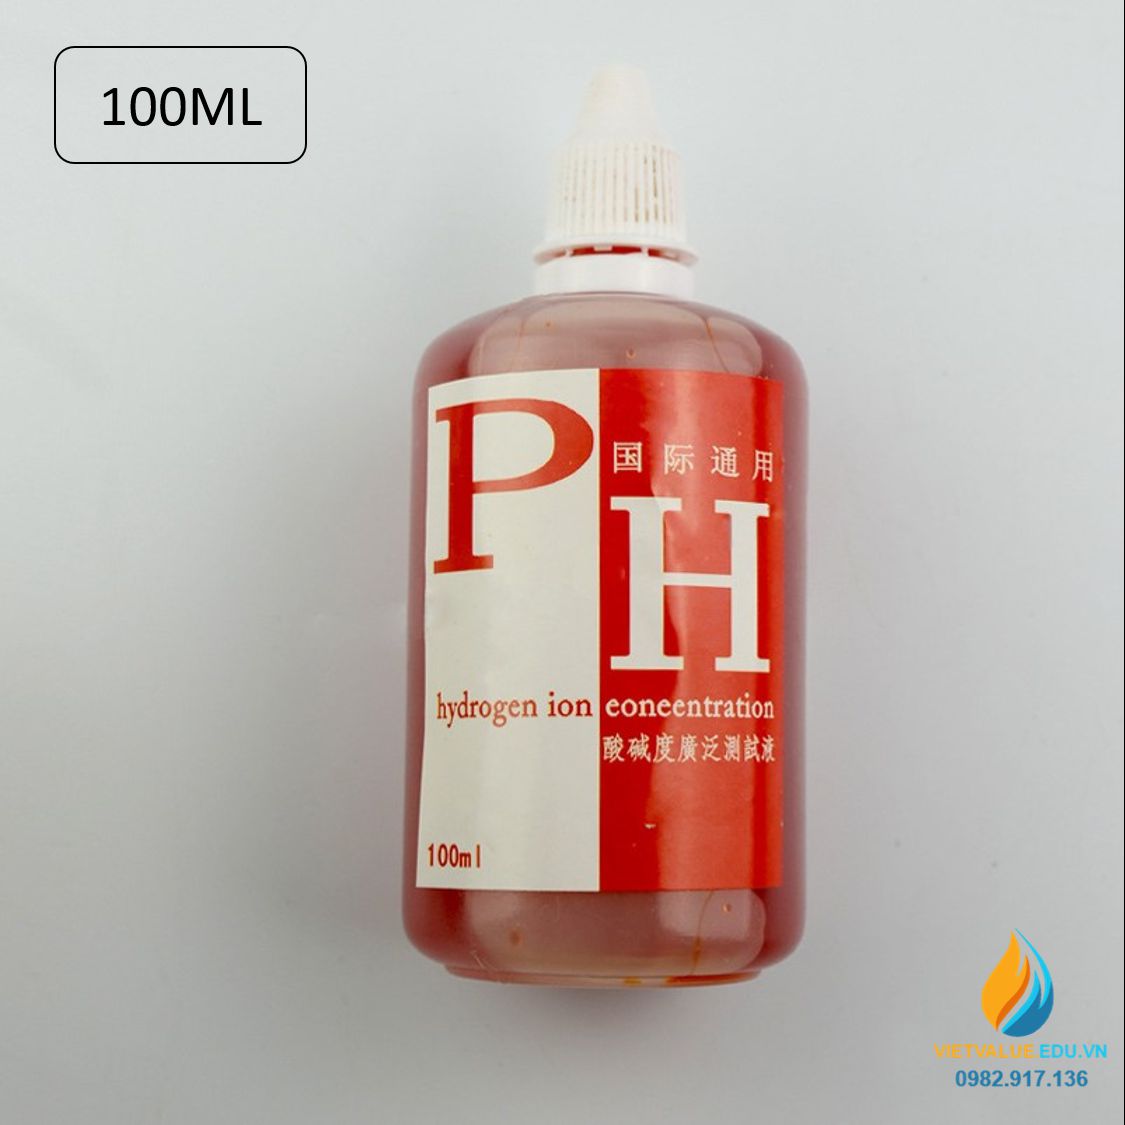 Thuốc thử PH kiểm tra độ axit bazo của dung dịch, dung tích 100ml